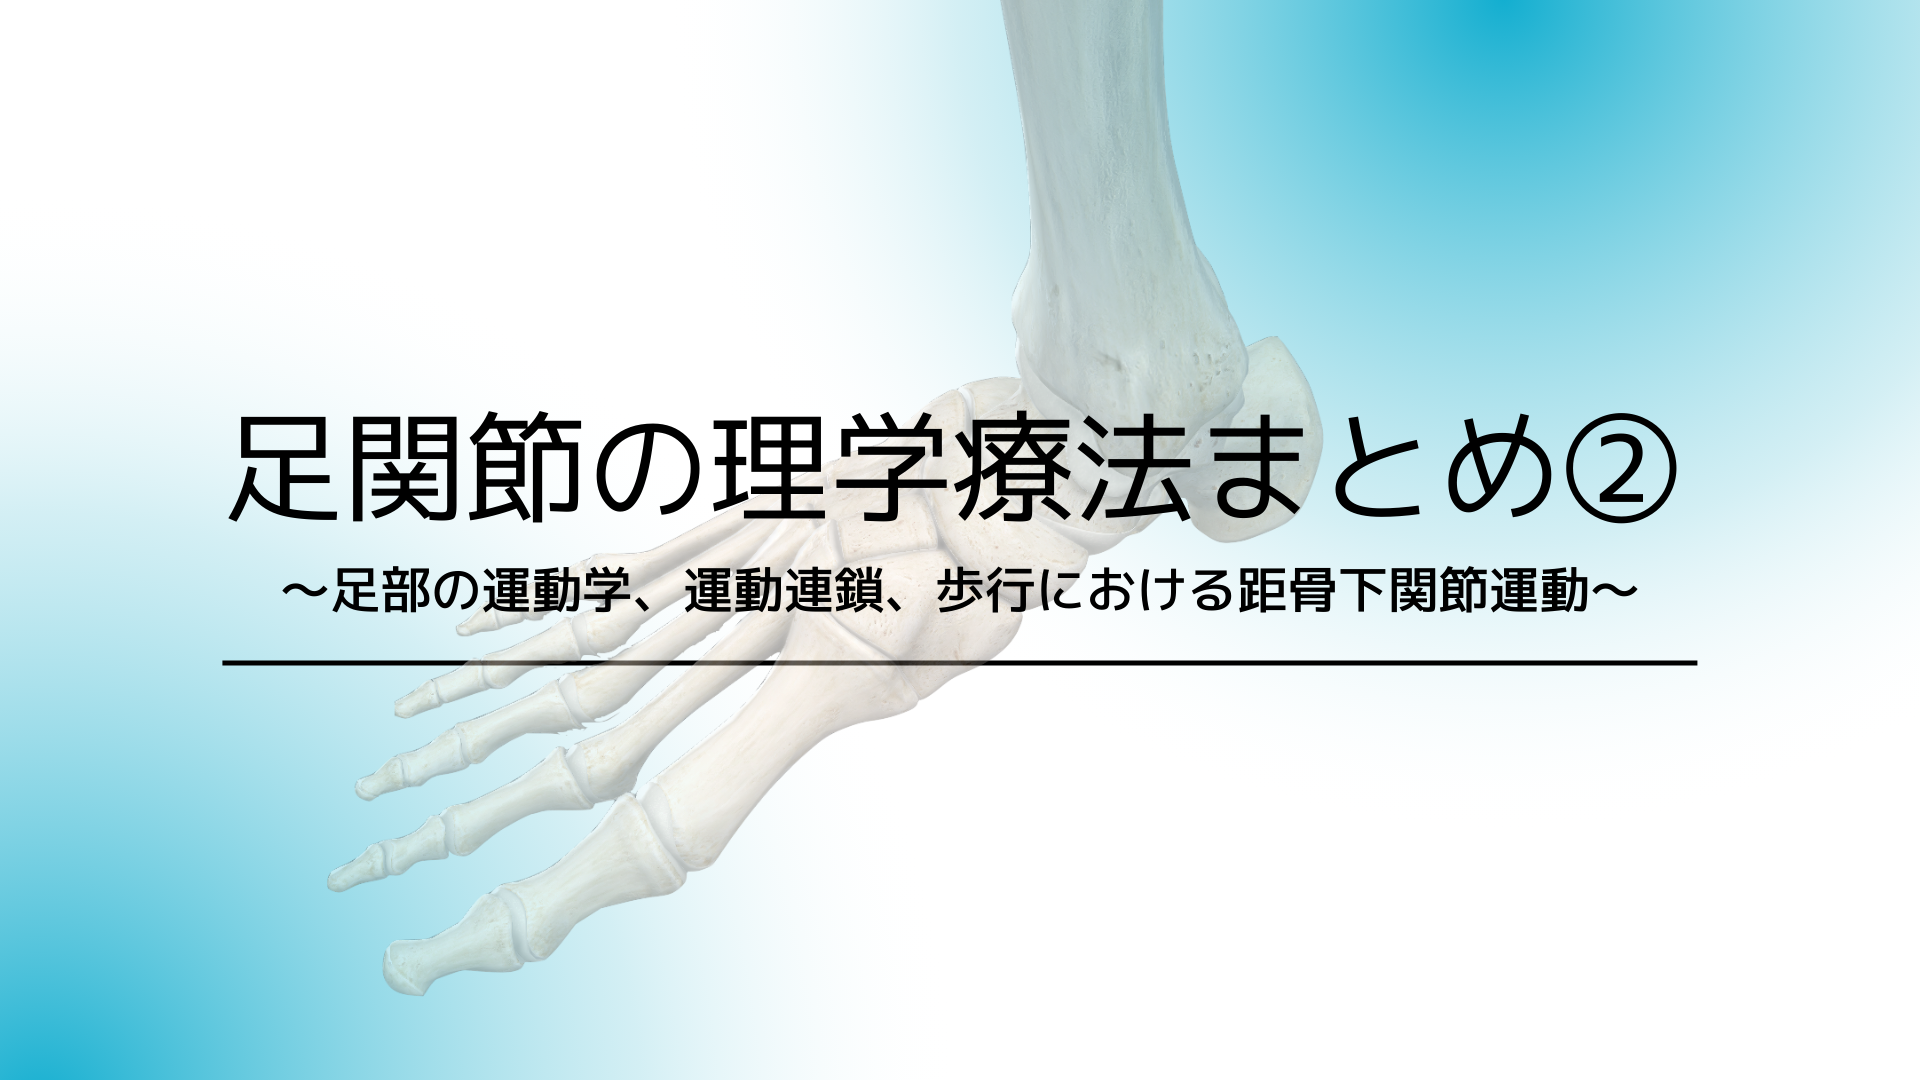 足関節の理学療法まとめ②〜足部の運動学、運動連鎖、歩行における距骨下関節運動〜